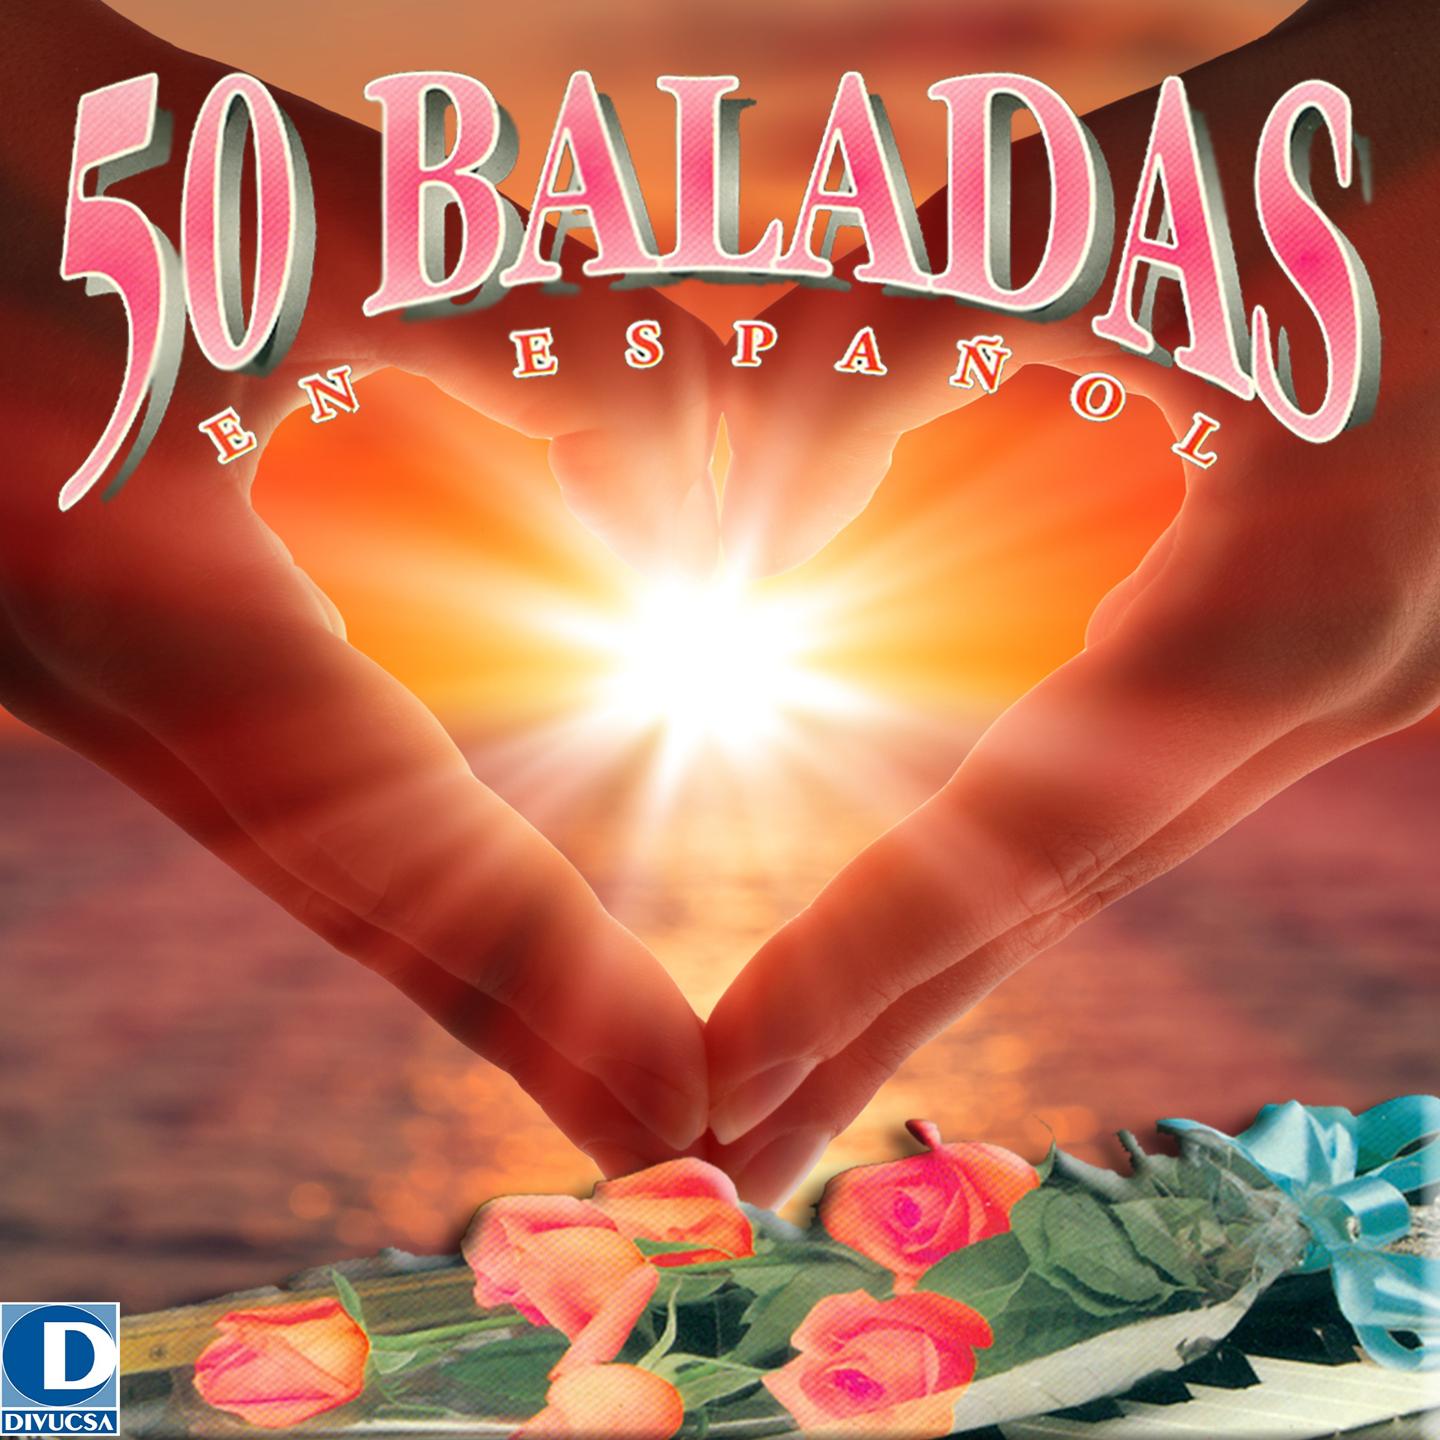 50 Baladas en Espa ol, Vol. 1